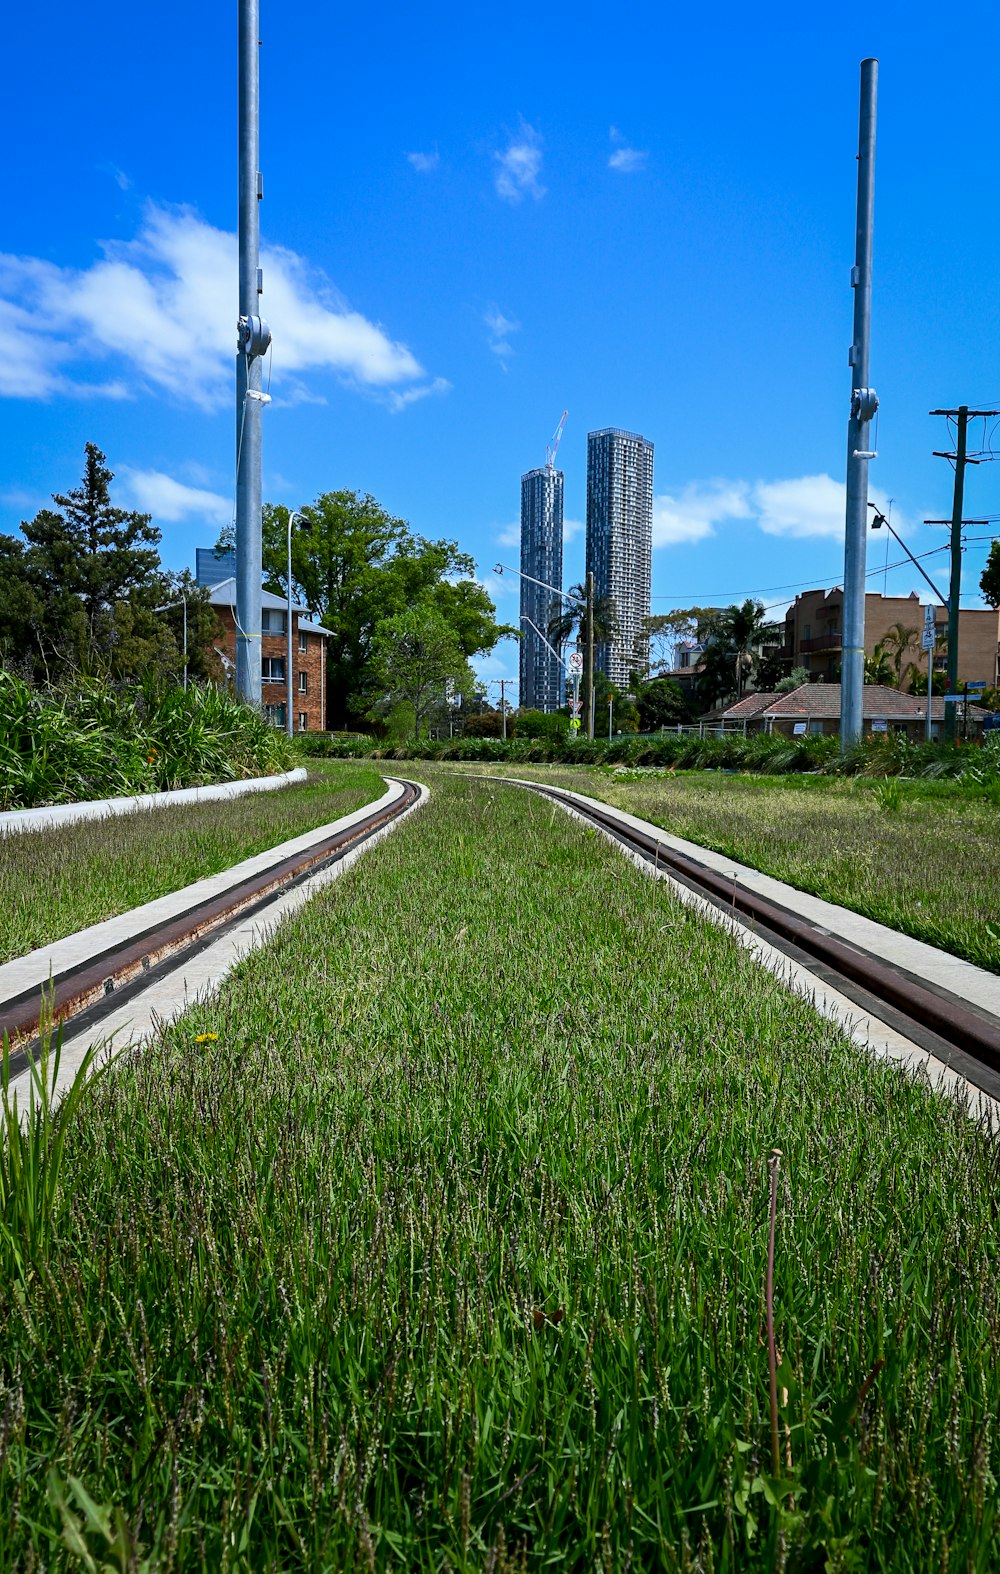 a train track running through a lush green field